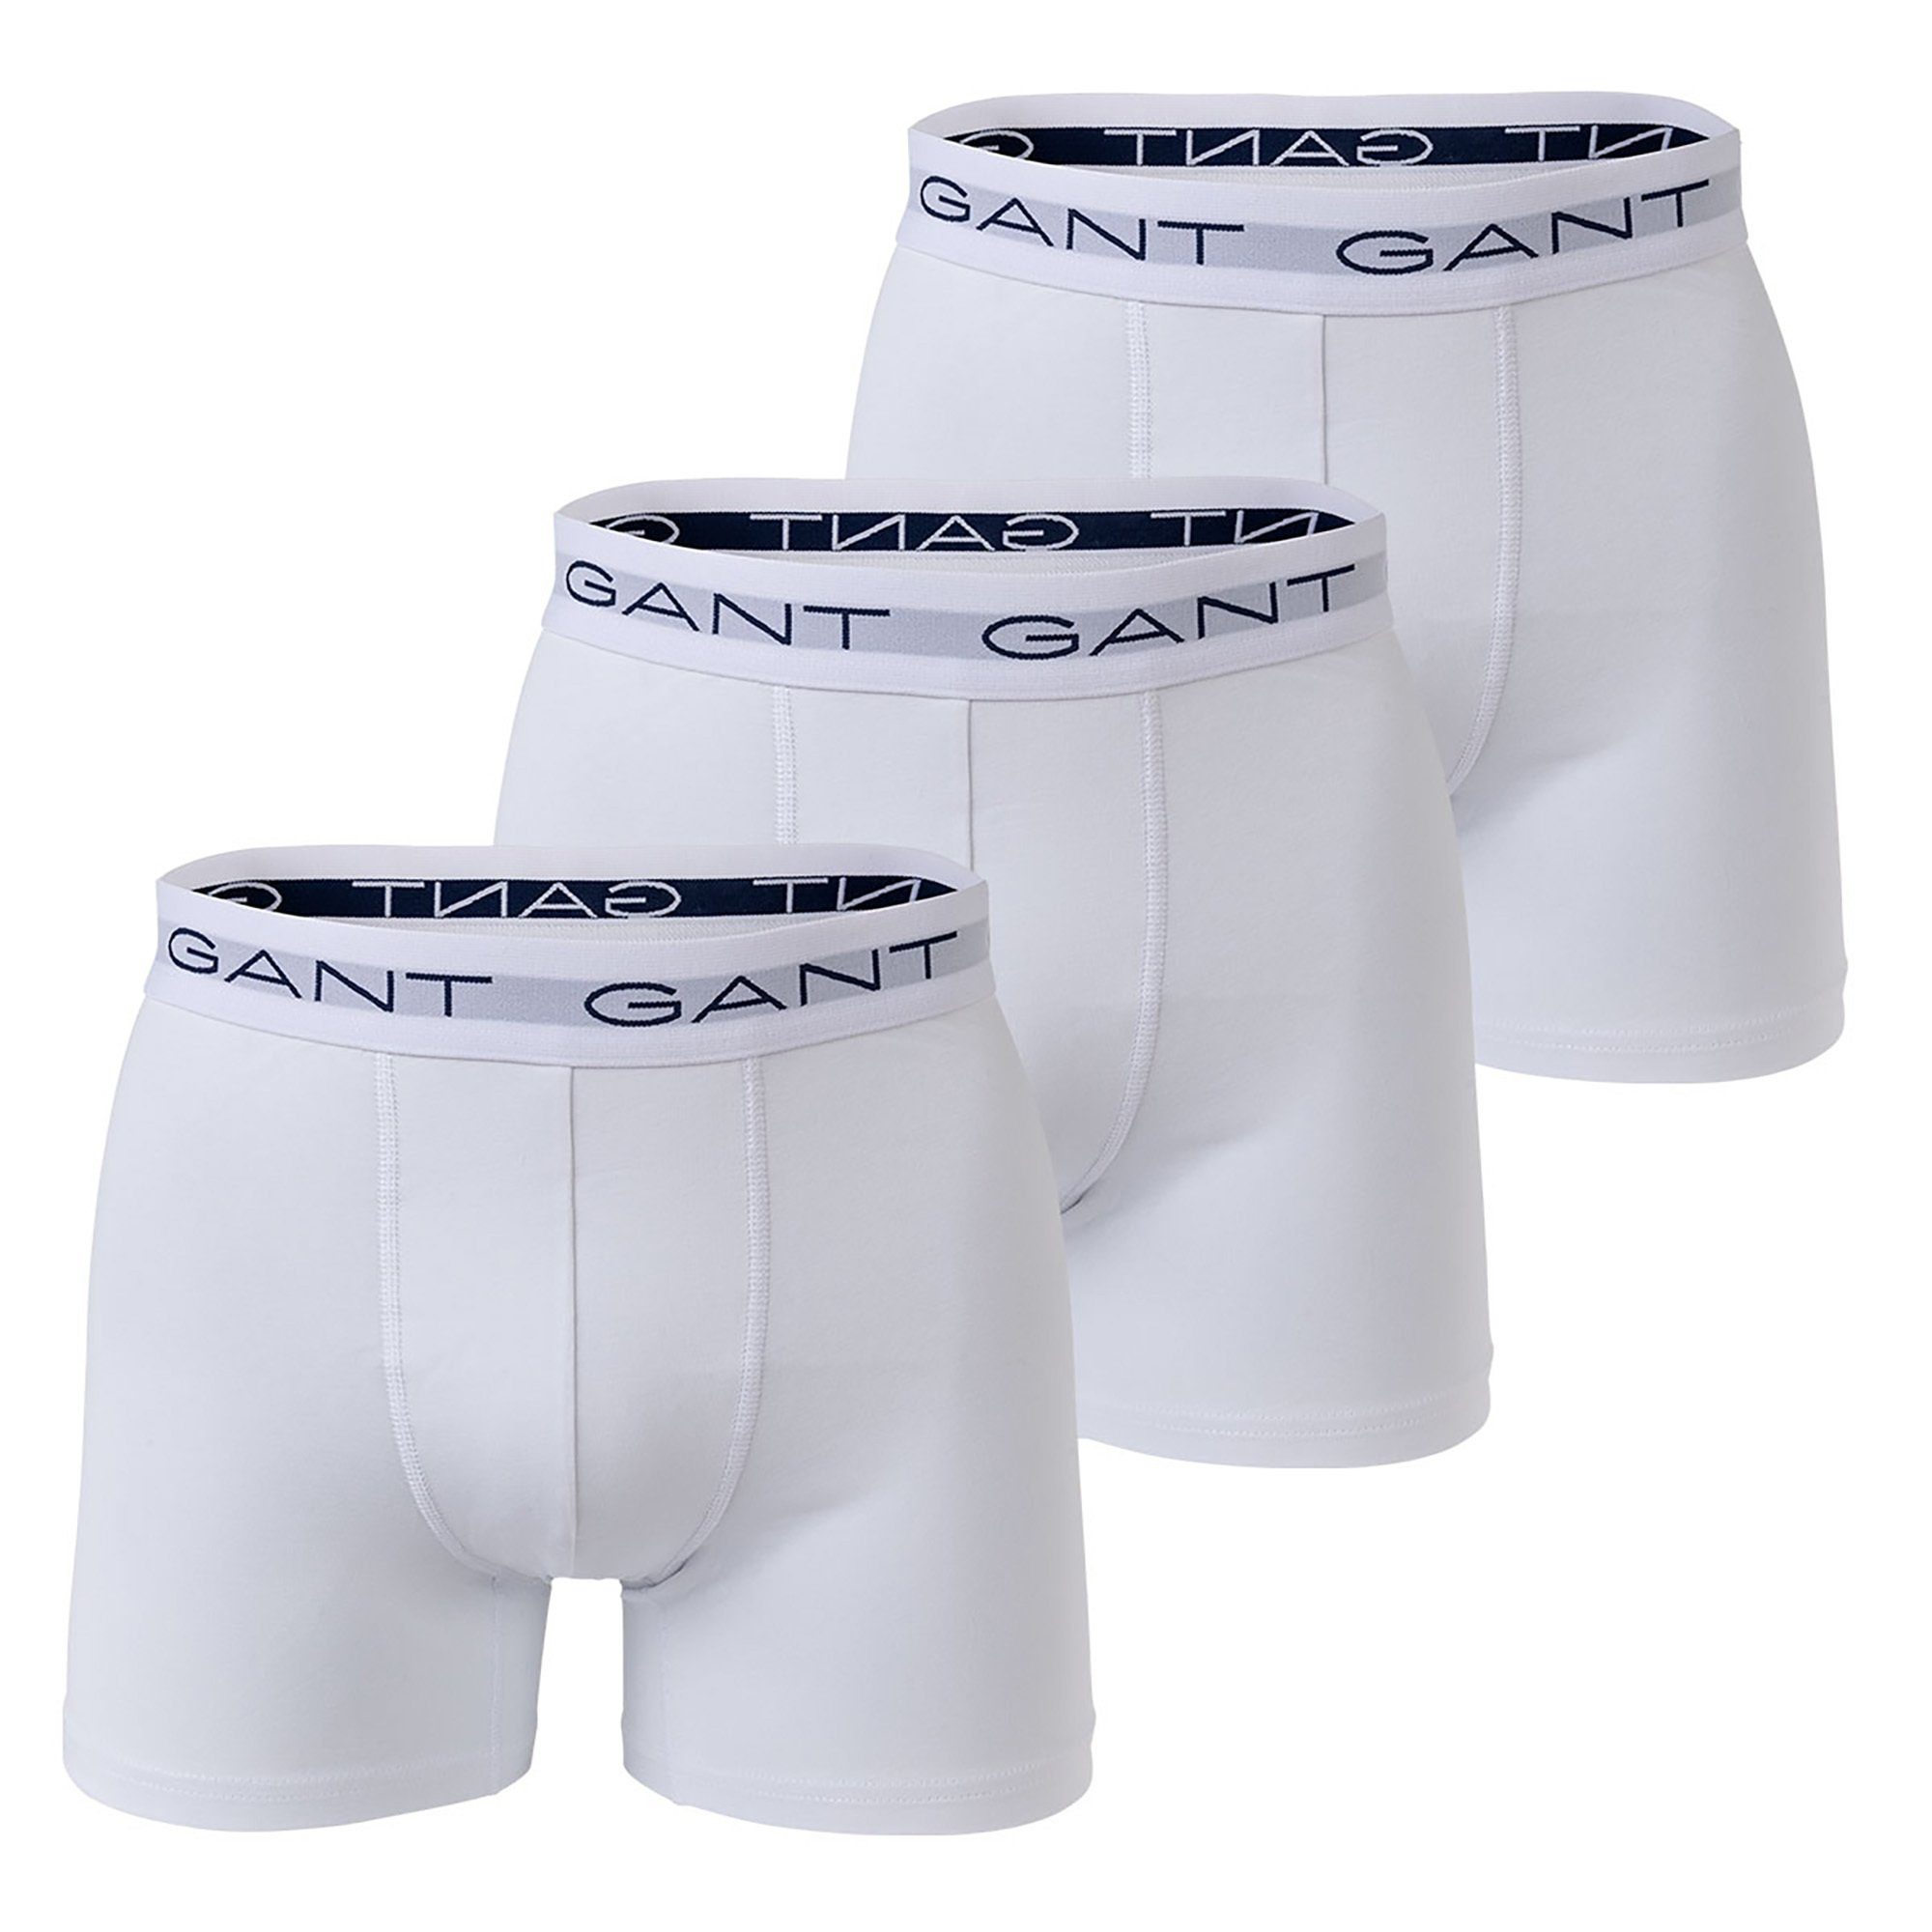 Gant Boxer Herren Boxershorts, 3er Pack - Boxer Briefs Weiß